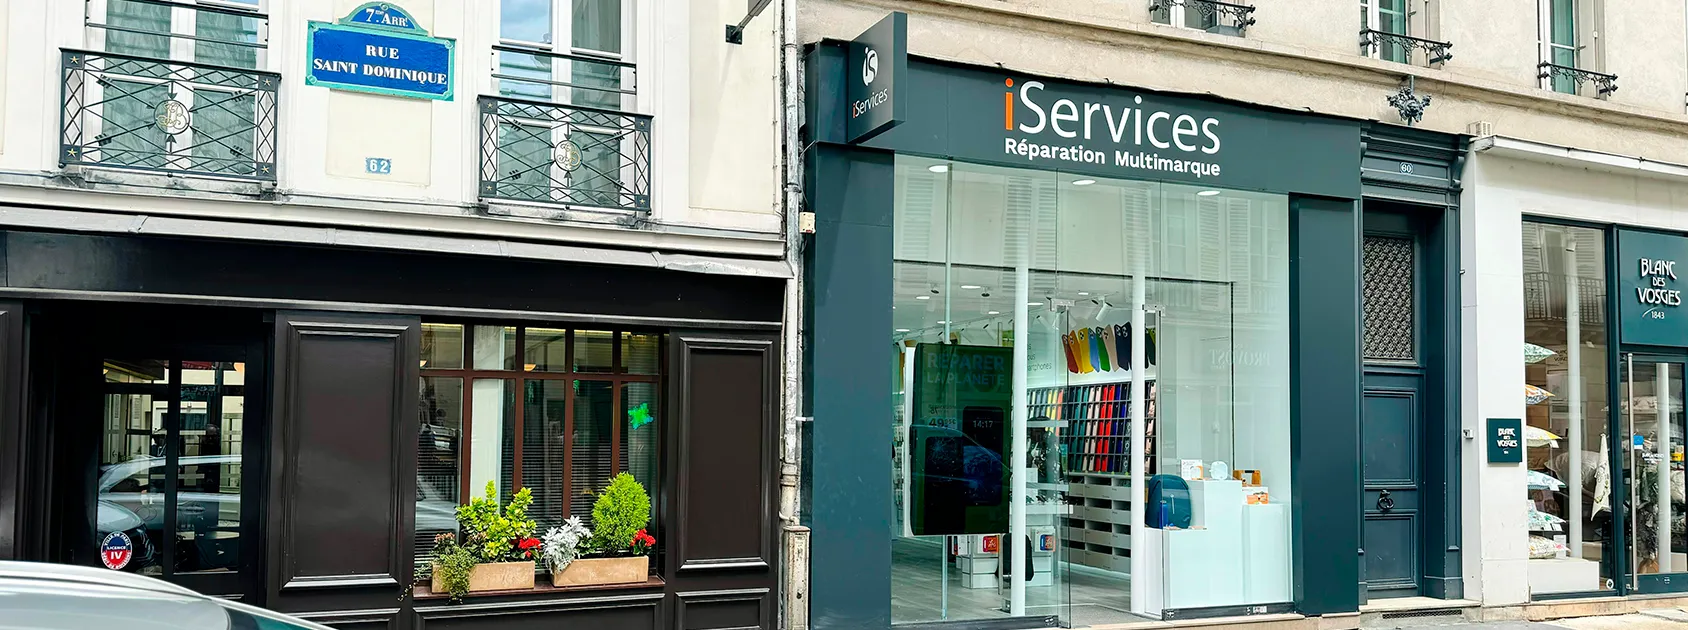 iServices ya ha abierto su tienda en St Dominique  blog post